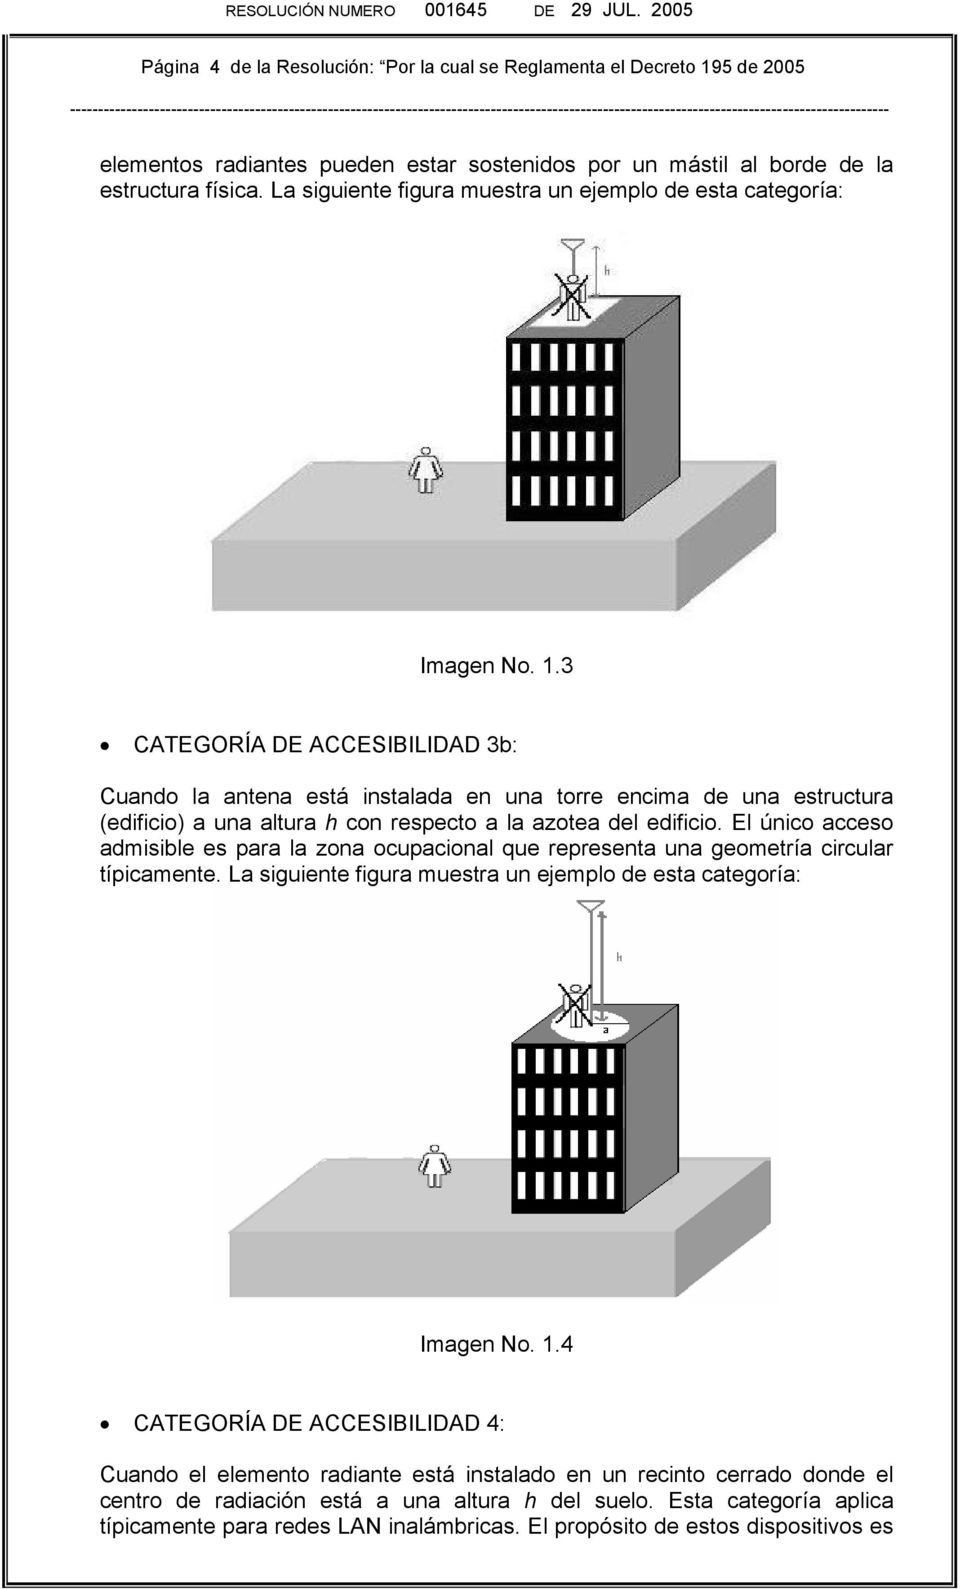 3 CATEGORÍA DE ACCEBILIDAD 3b: Cuando la antena está instalada en una torre encima de una estructura (edificio) a una altura h con respecto a la azotea del edificio.